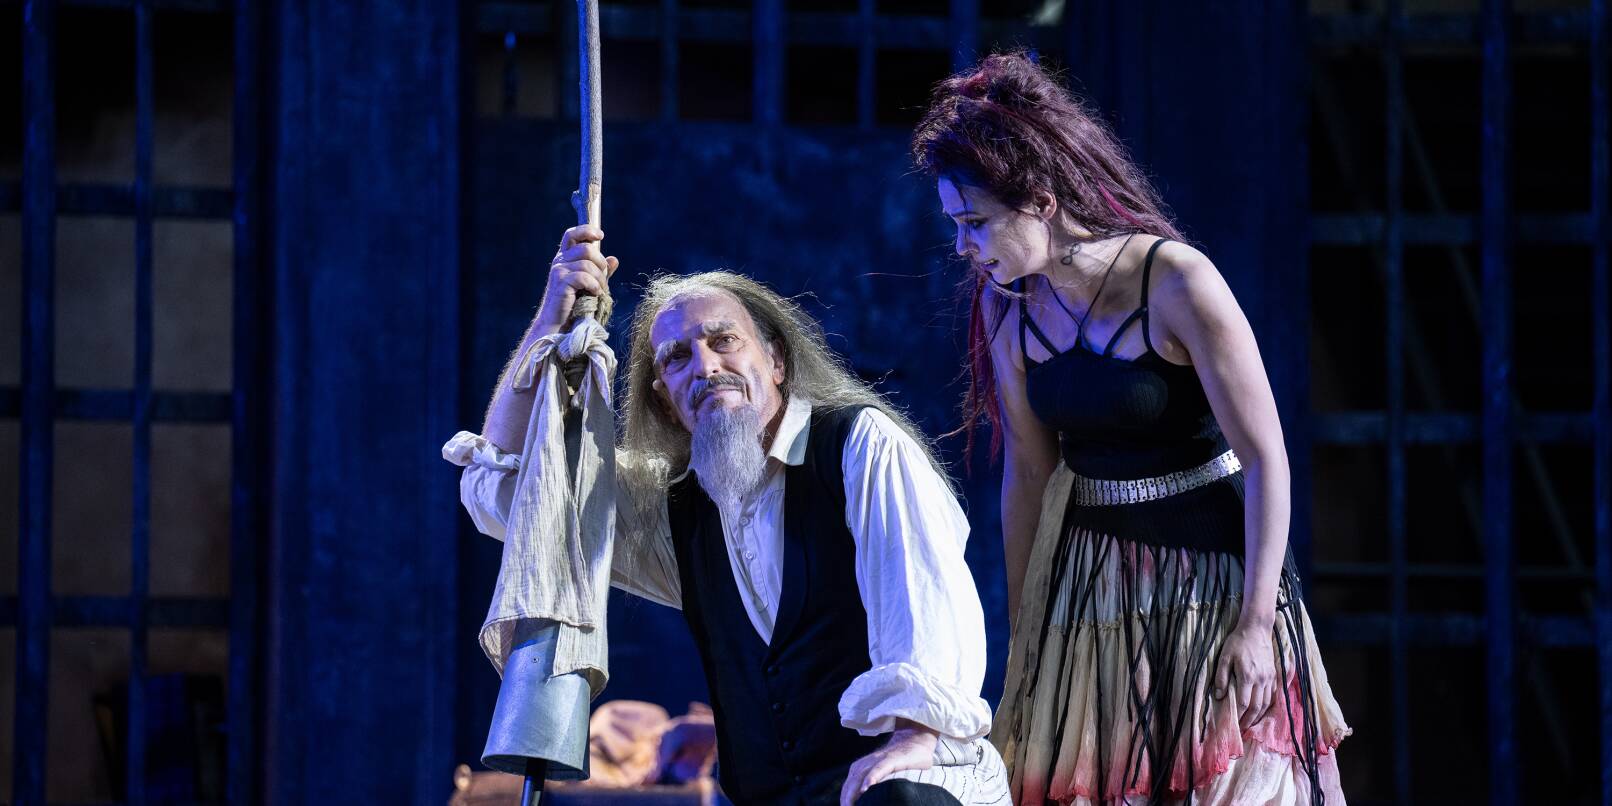 Das Theaterstück „Der Mann von La Mancha“ wird im Rahmen der Schlossfestspiele an neun Abenden aufgeführt. Die Inszenierung stammt von Chusch Jung, der auch die Titelrolle singt.